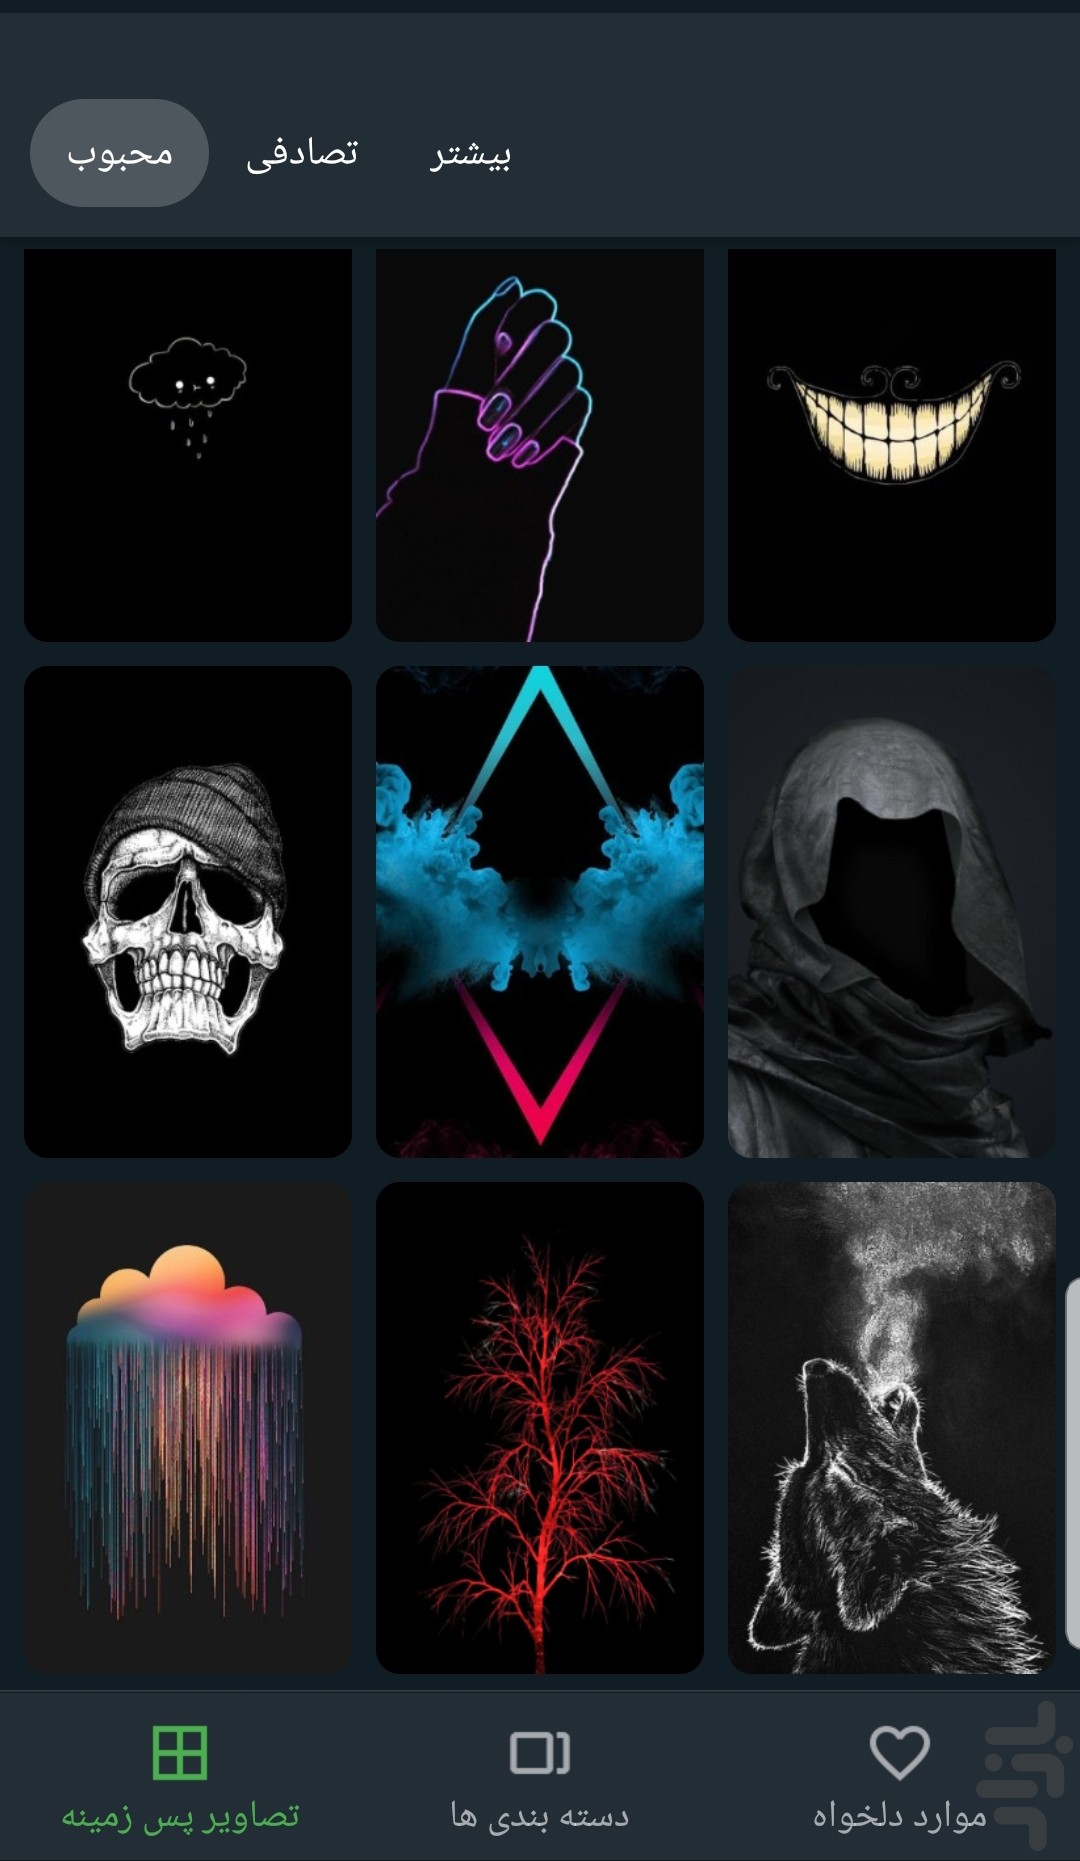 Dark Wallpaper: Desktop Backgrounds and iPhone Wallpaper